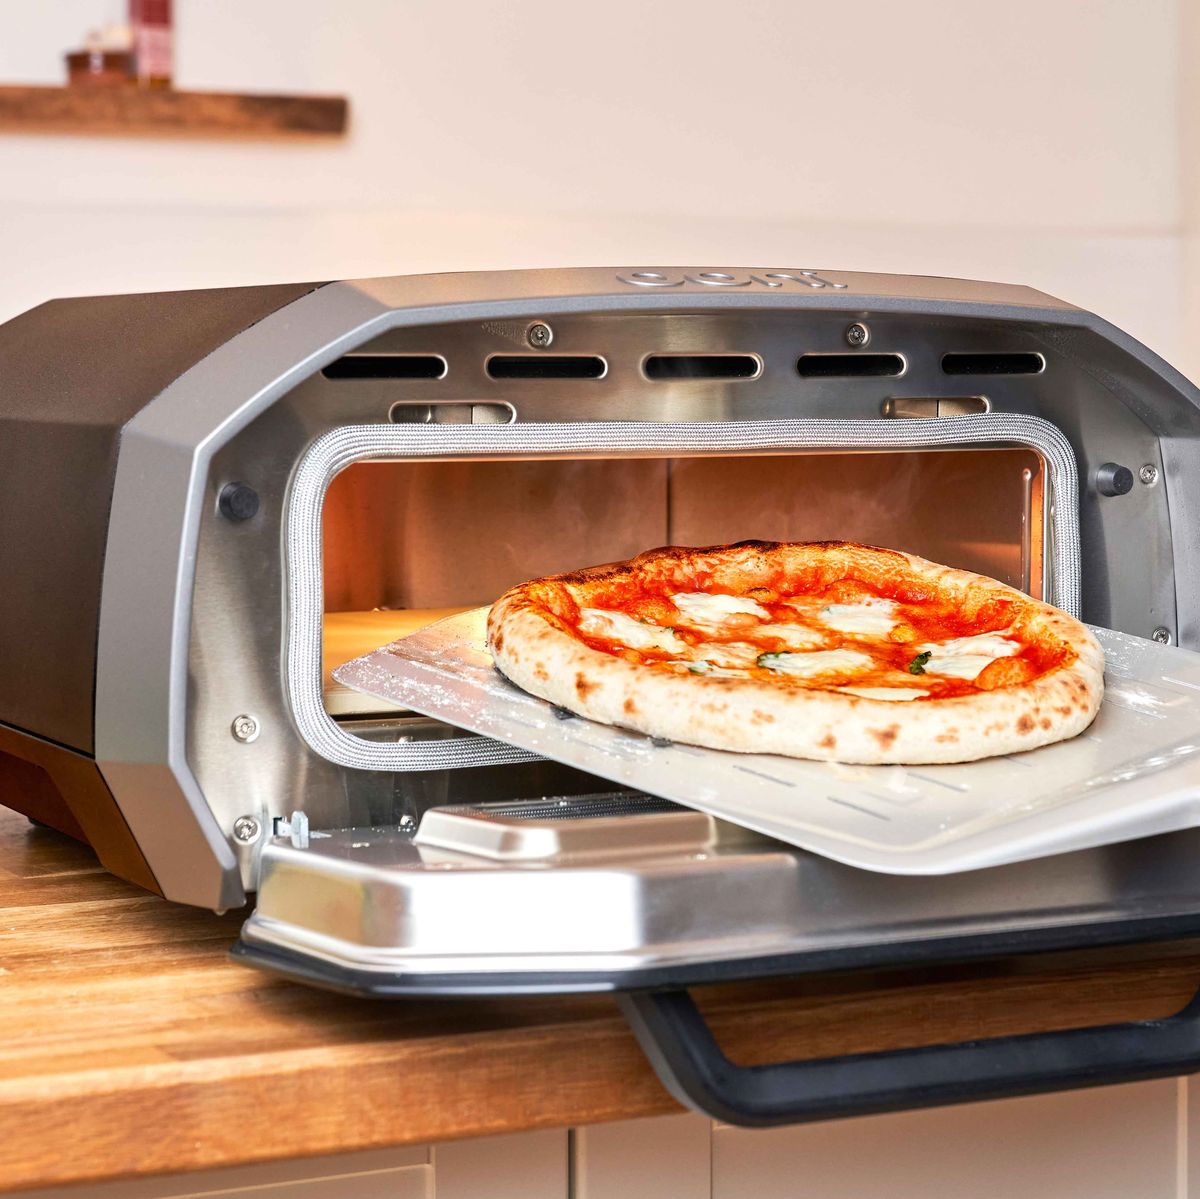 Meet Your New Favorite Indoor-Outdoor Pizza Oven